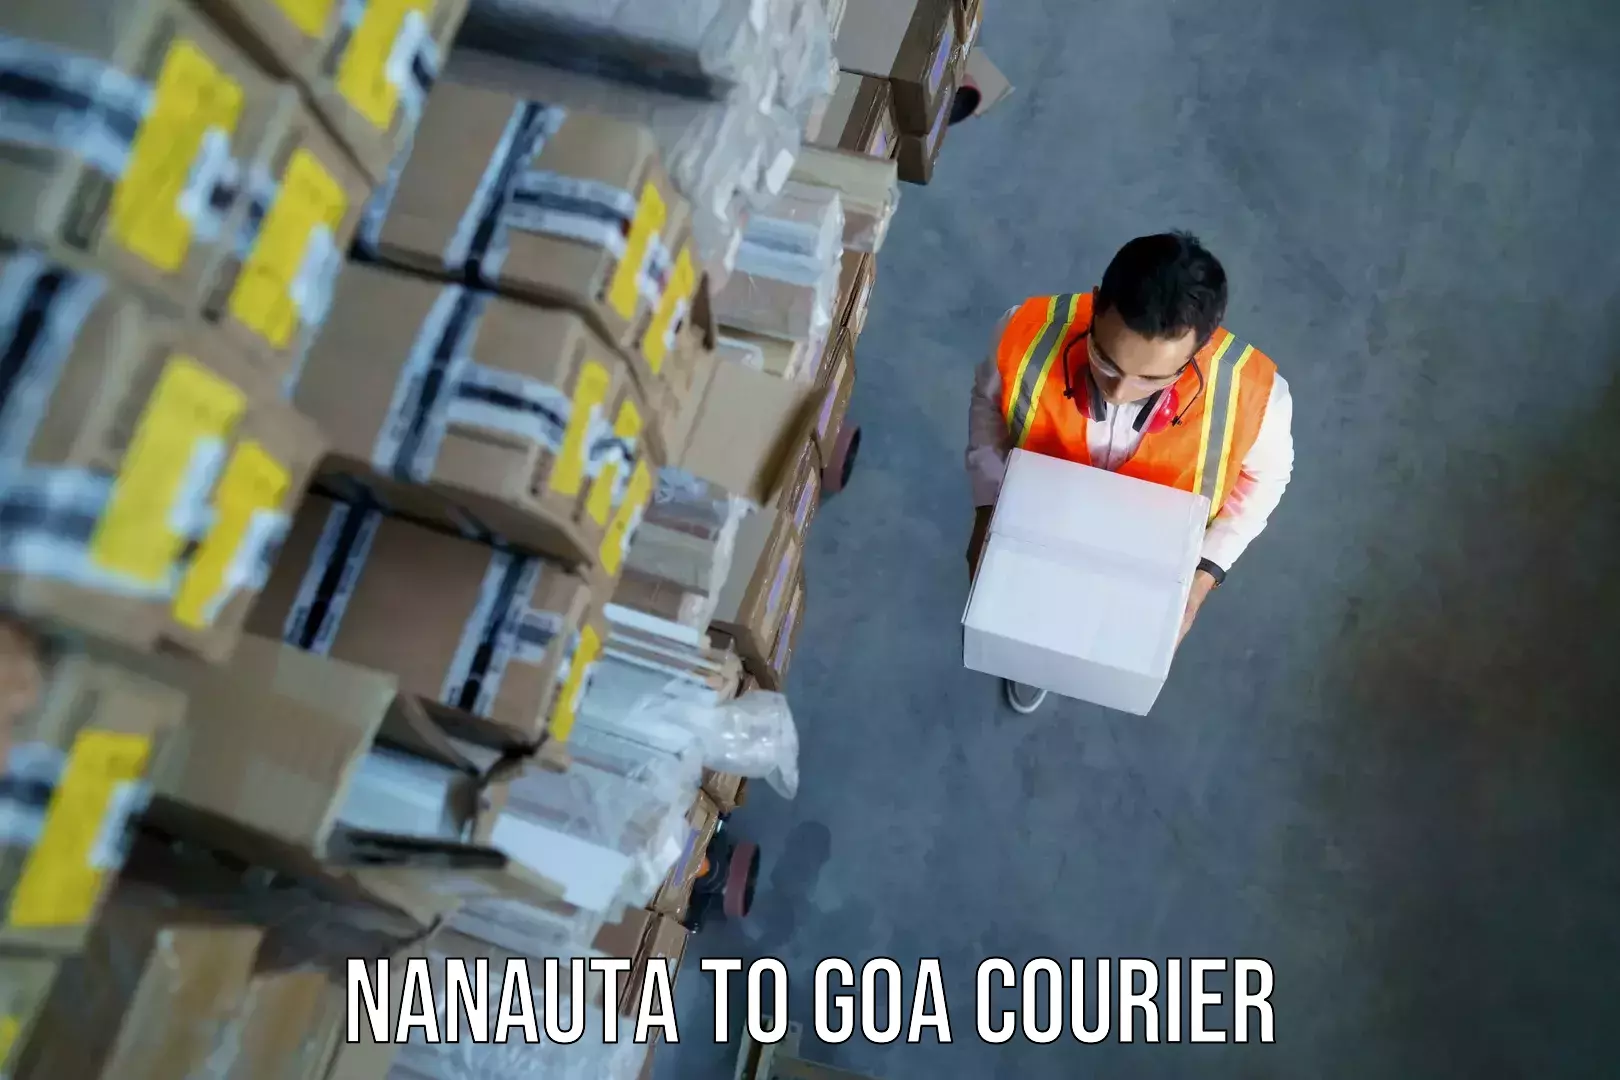 Global baggage shipping in Nanauta to IIT Goa